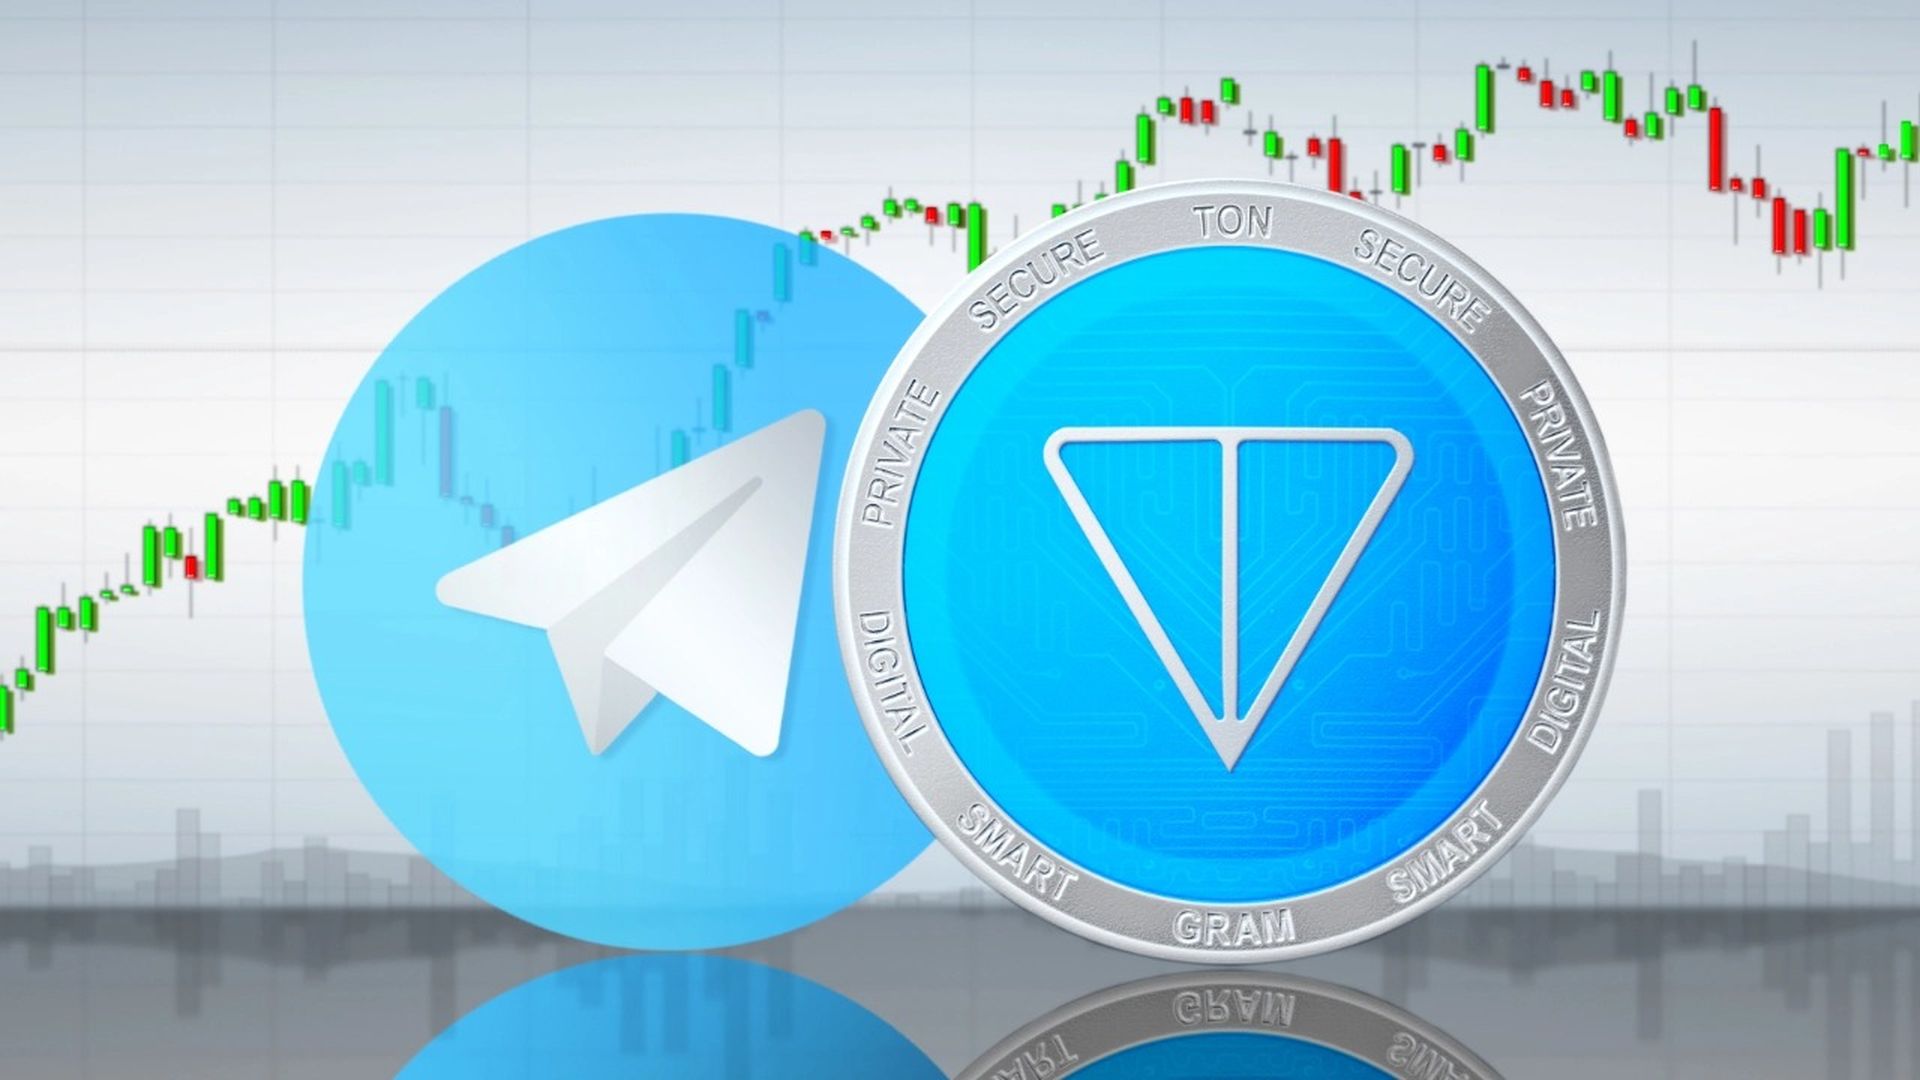 Gli utenti di Telegram ora possono scambiare TON utilizzando la piattaforma di messaggistica